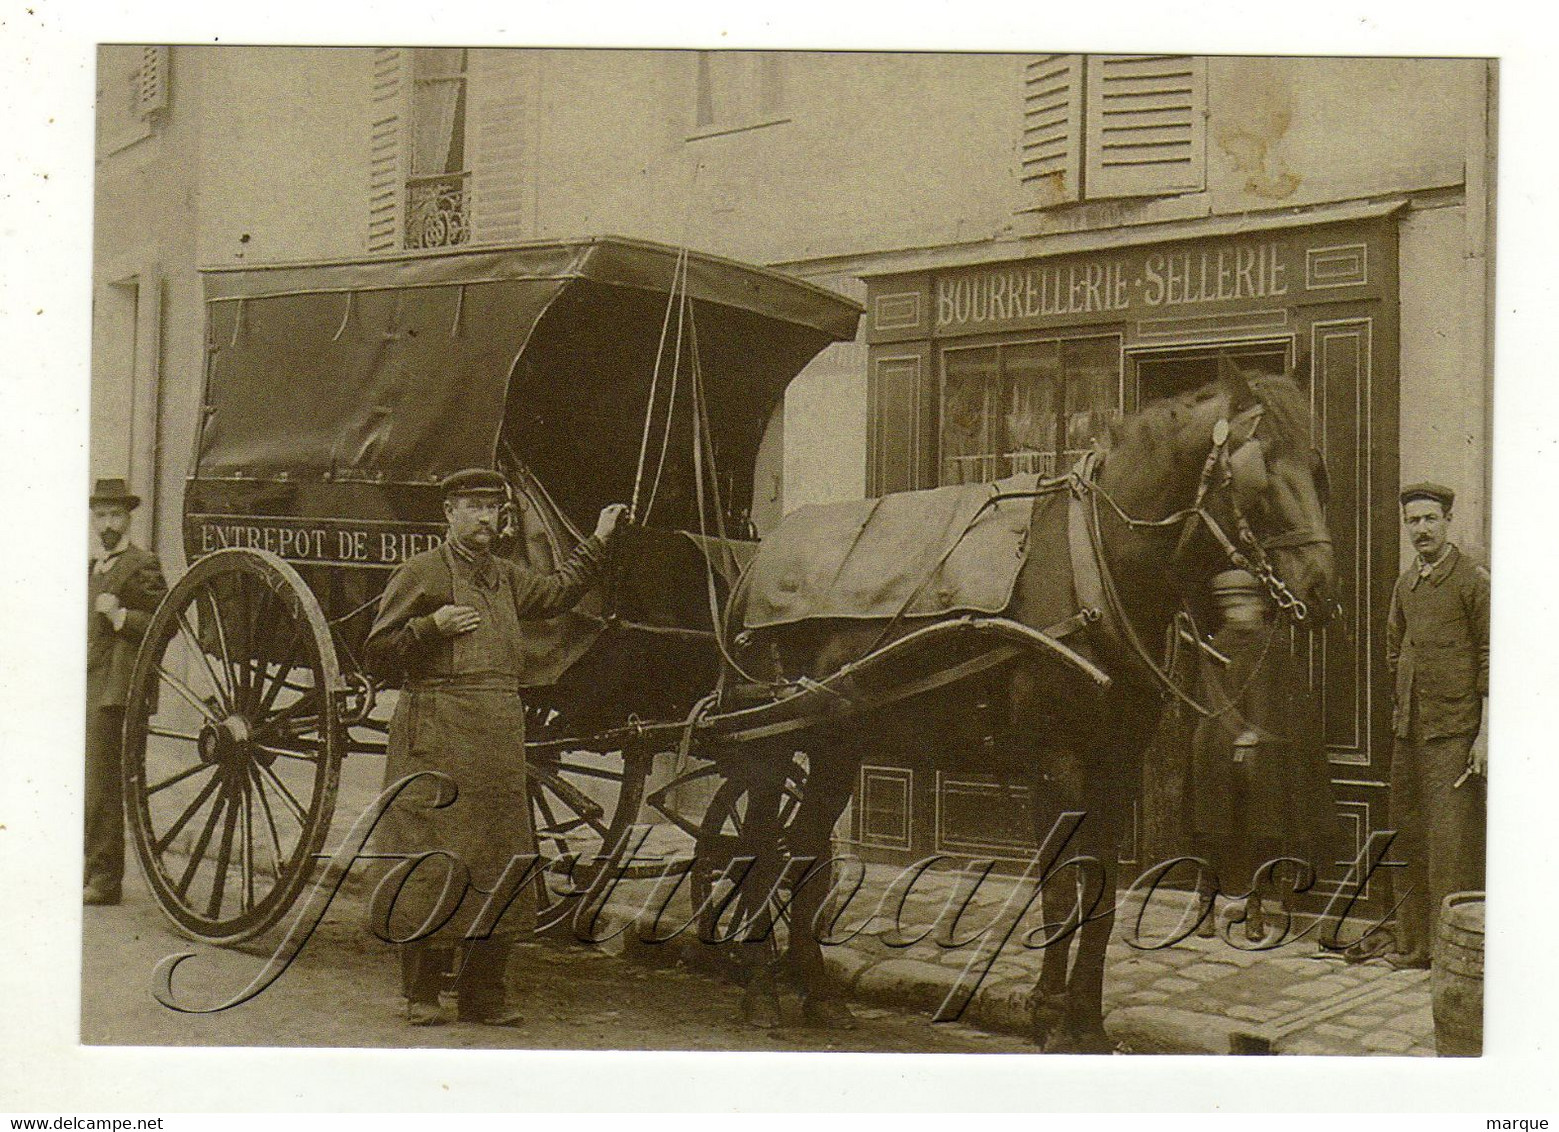 Carte Publicitaire Entrepot De Bières Bourrellerie Sellerie - Street Merchants